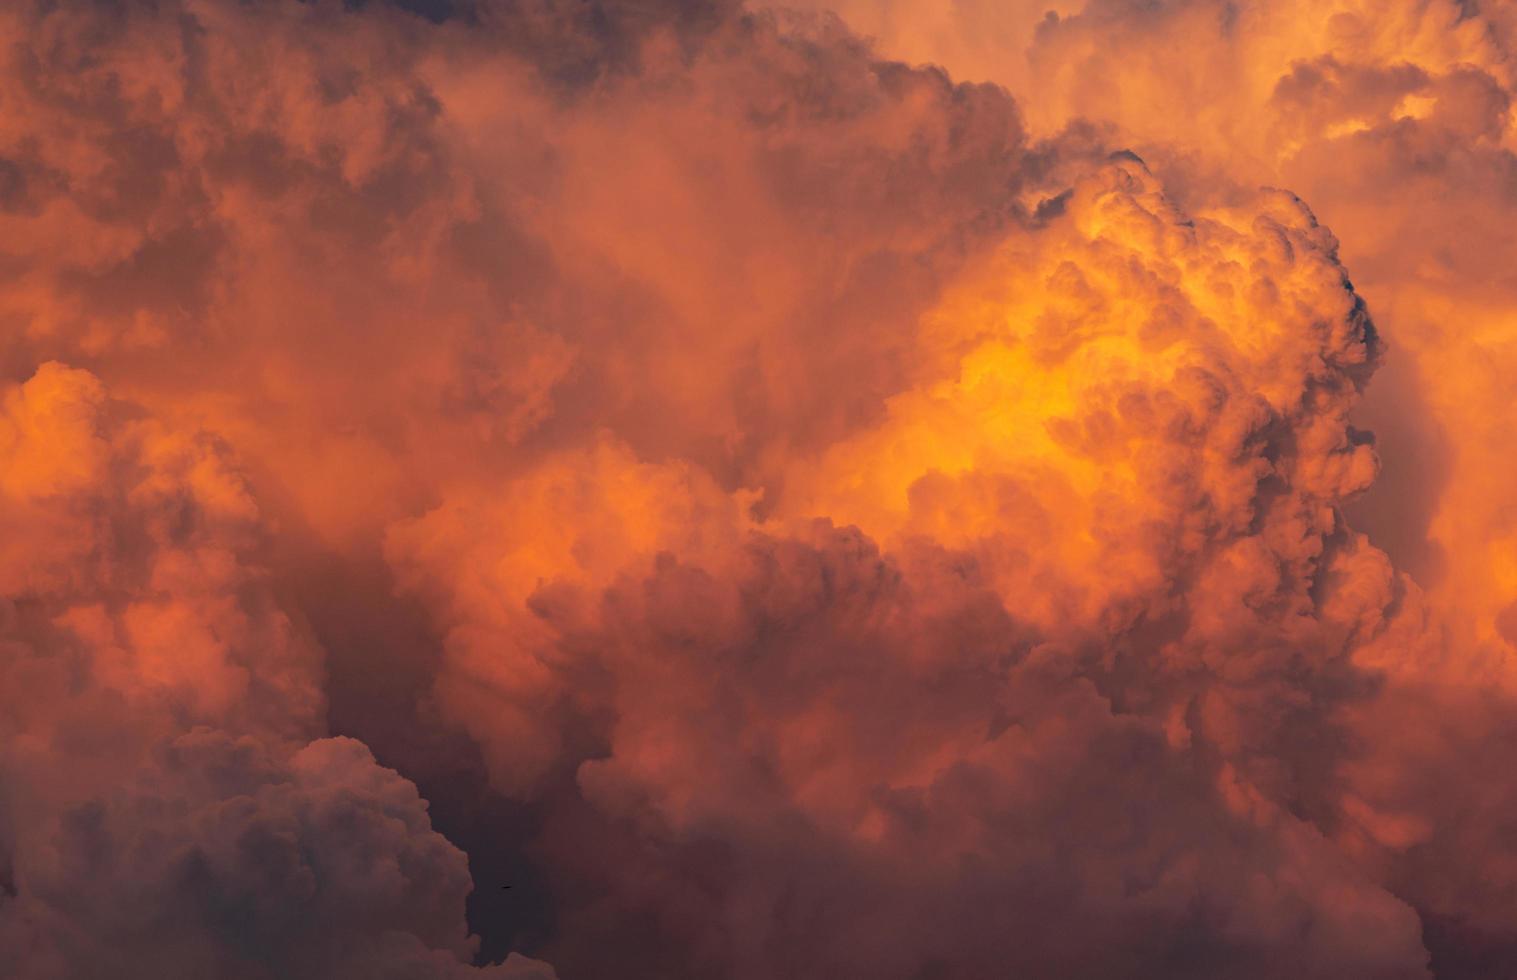 dramatischer orangefarbener Himmel und abstrakter Hintergrund der Wolken. Draufsicht auf orangefarbene Wolken. Hintergrund des warmen Wetters. Kunstbild der orangefarbenen Wolkenstruktur. foto